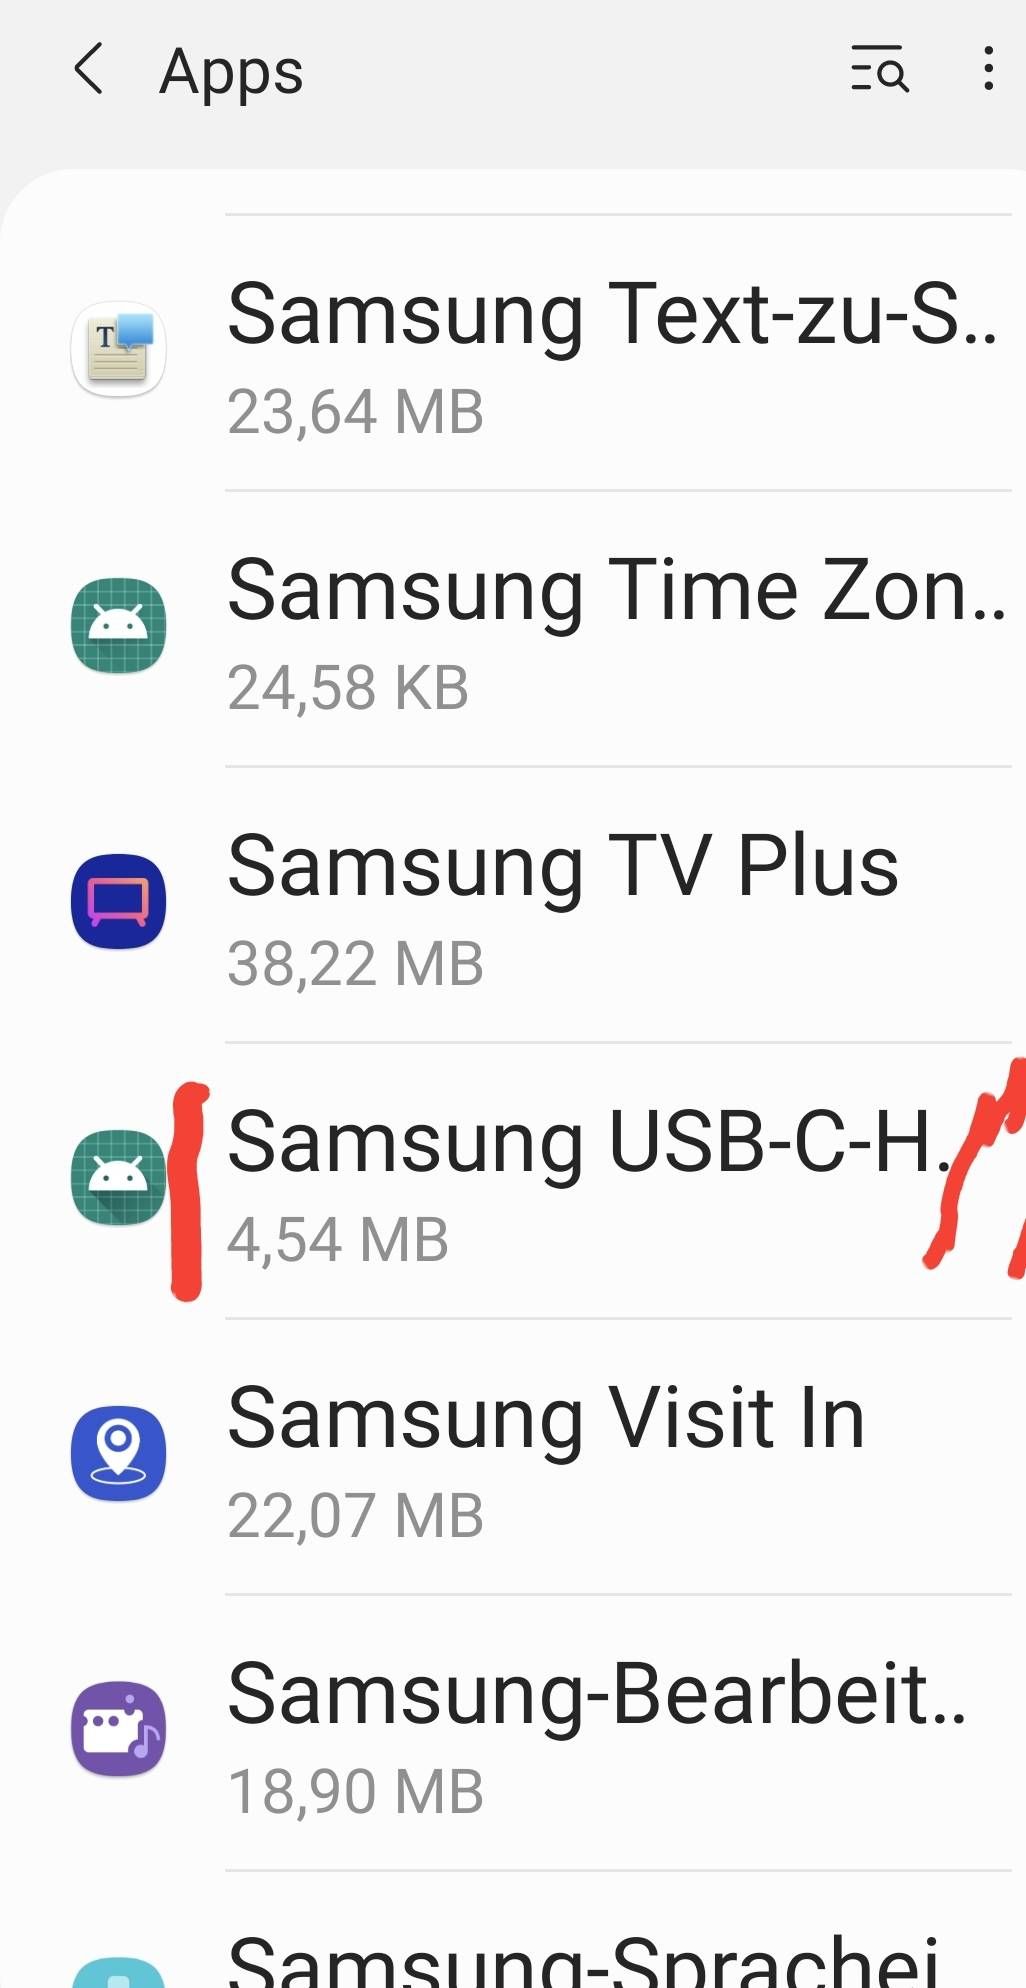 Lade-/Usb Anschluss prüfen - Samsung Community